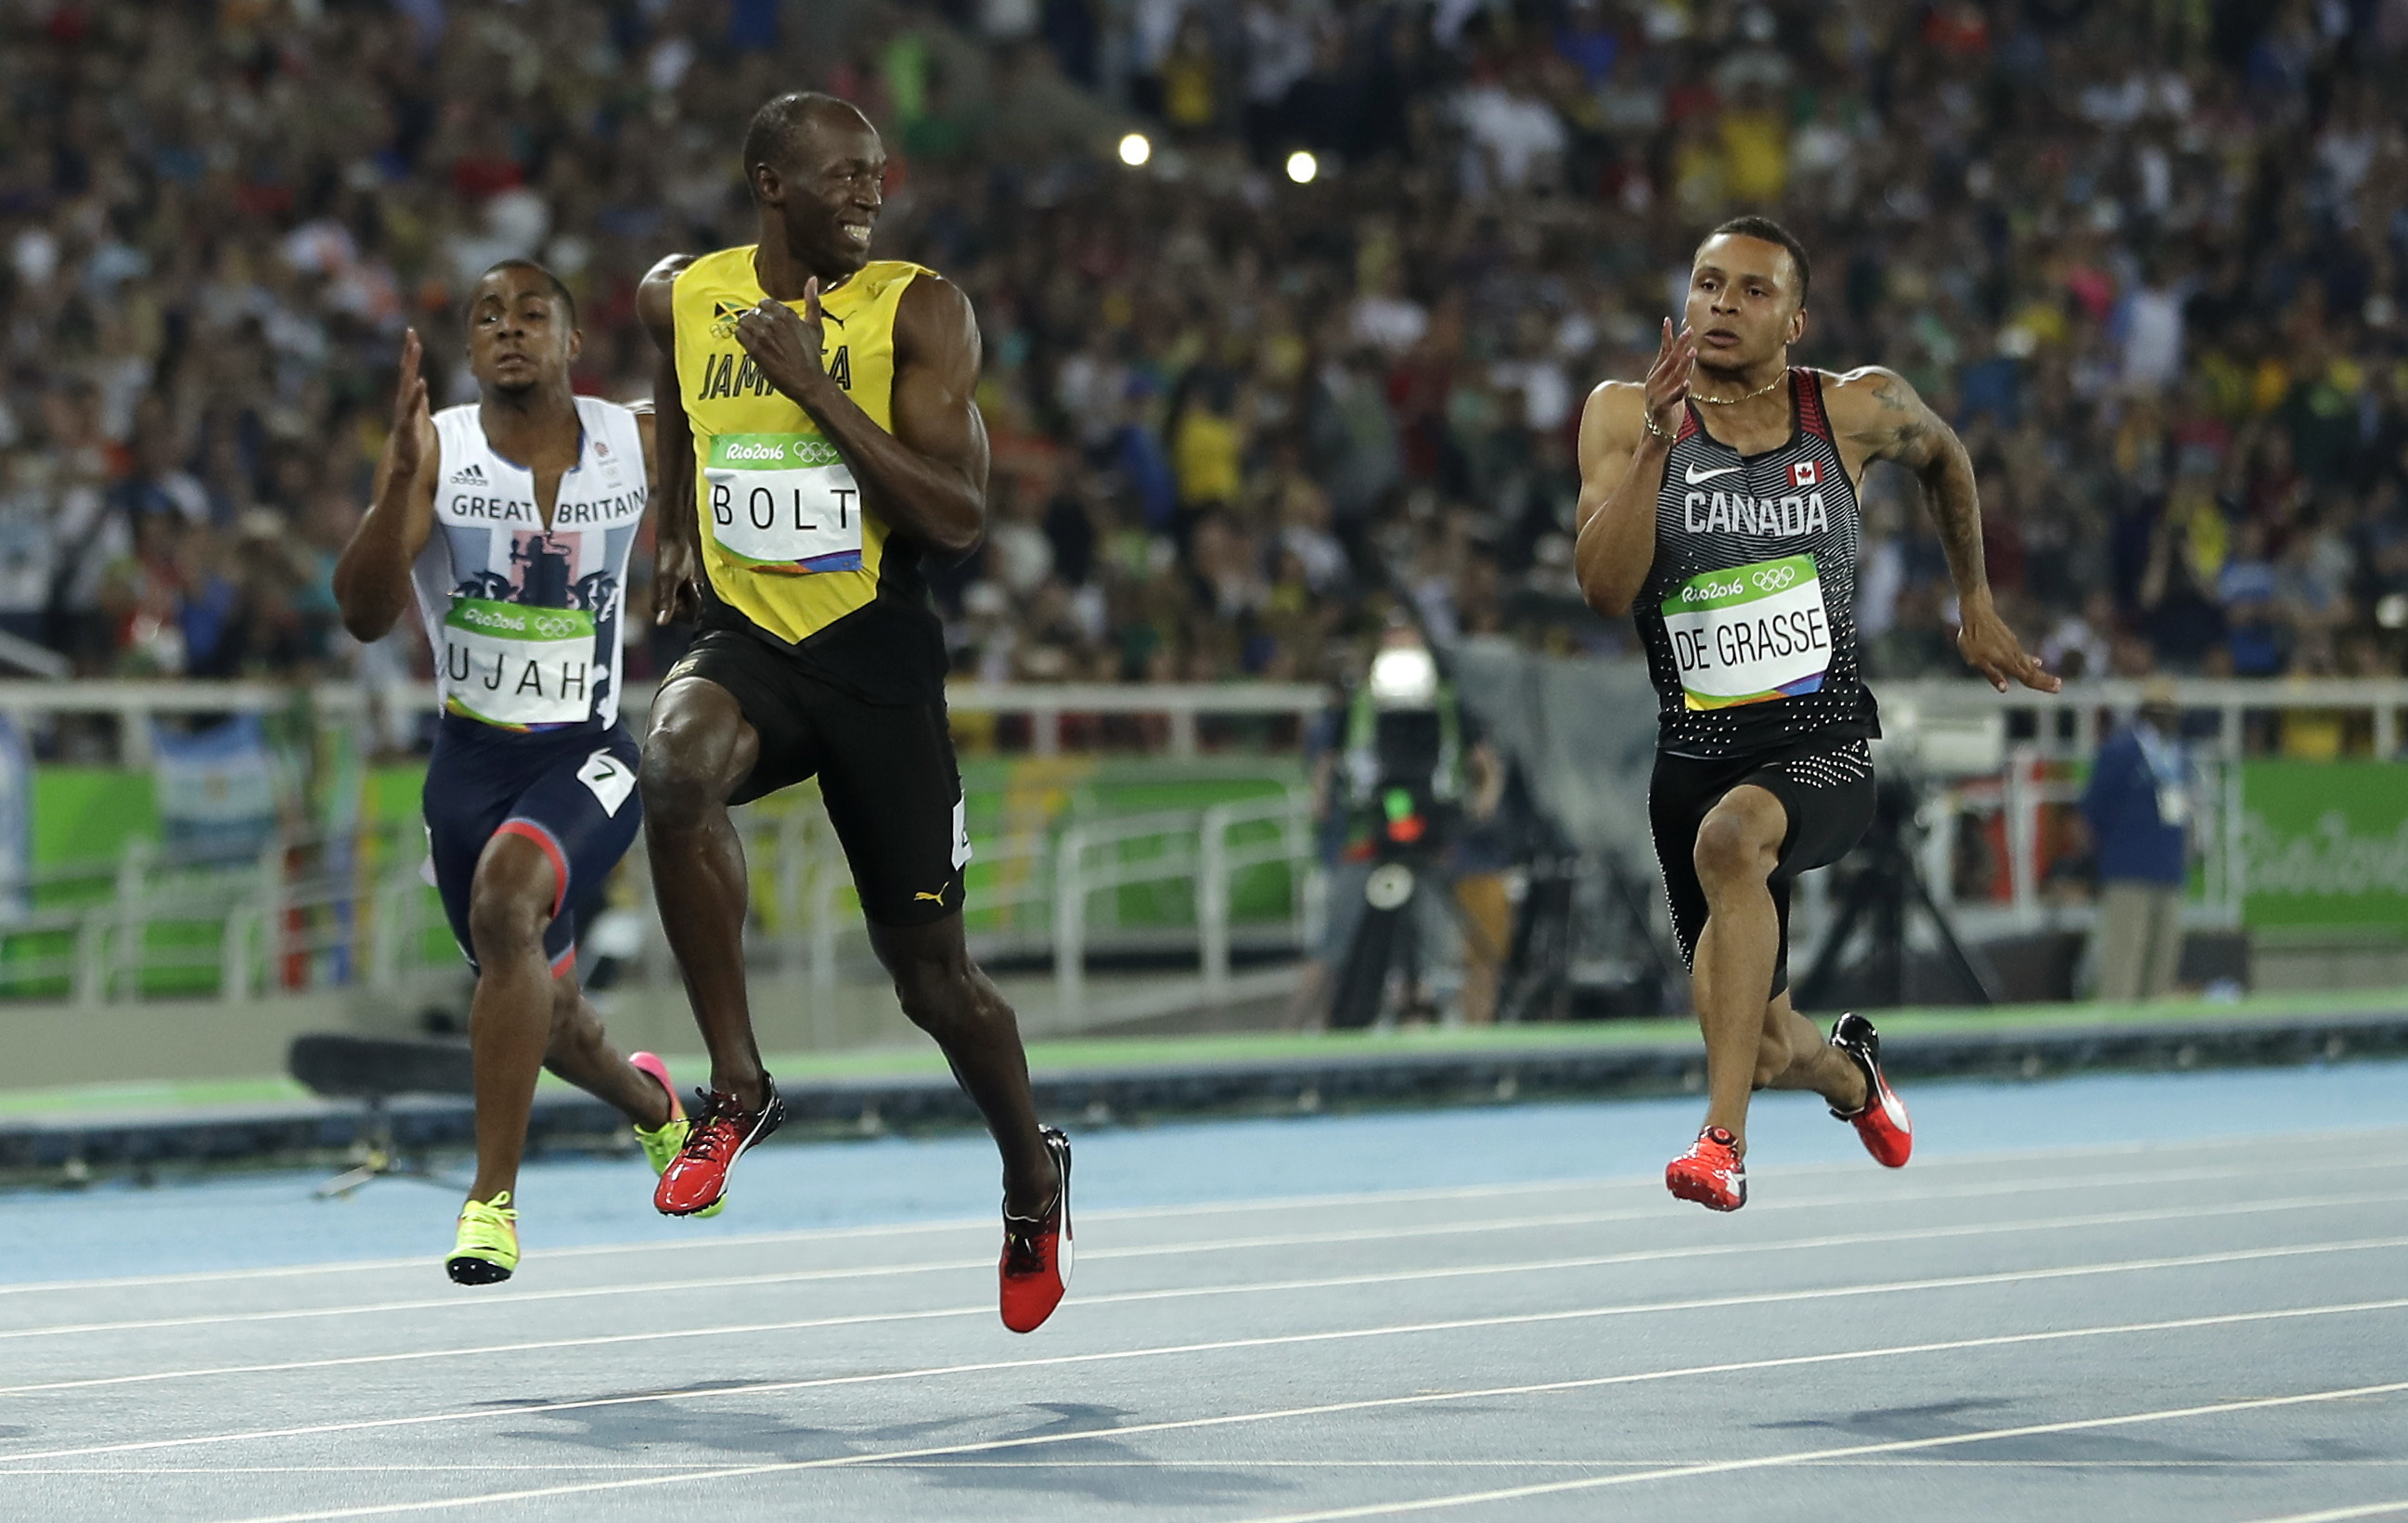 Varför är Bolt världens snabbaste man? Det kan bero på hans längd.